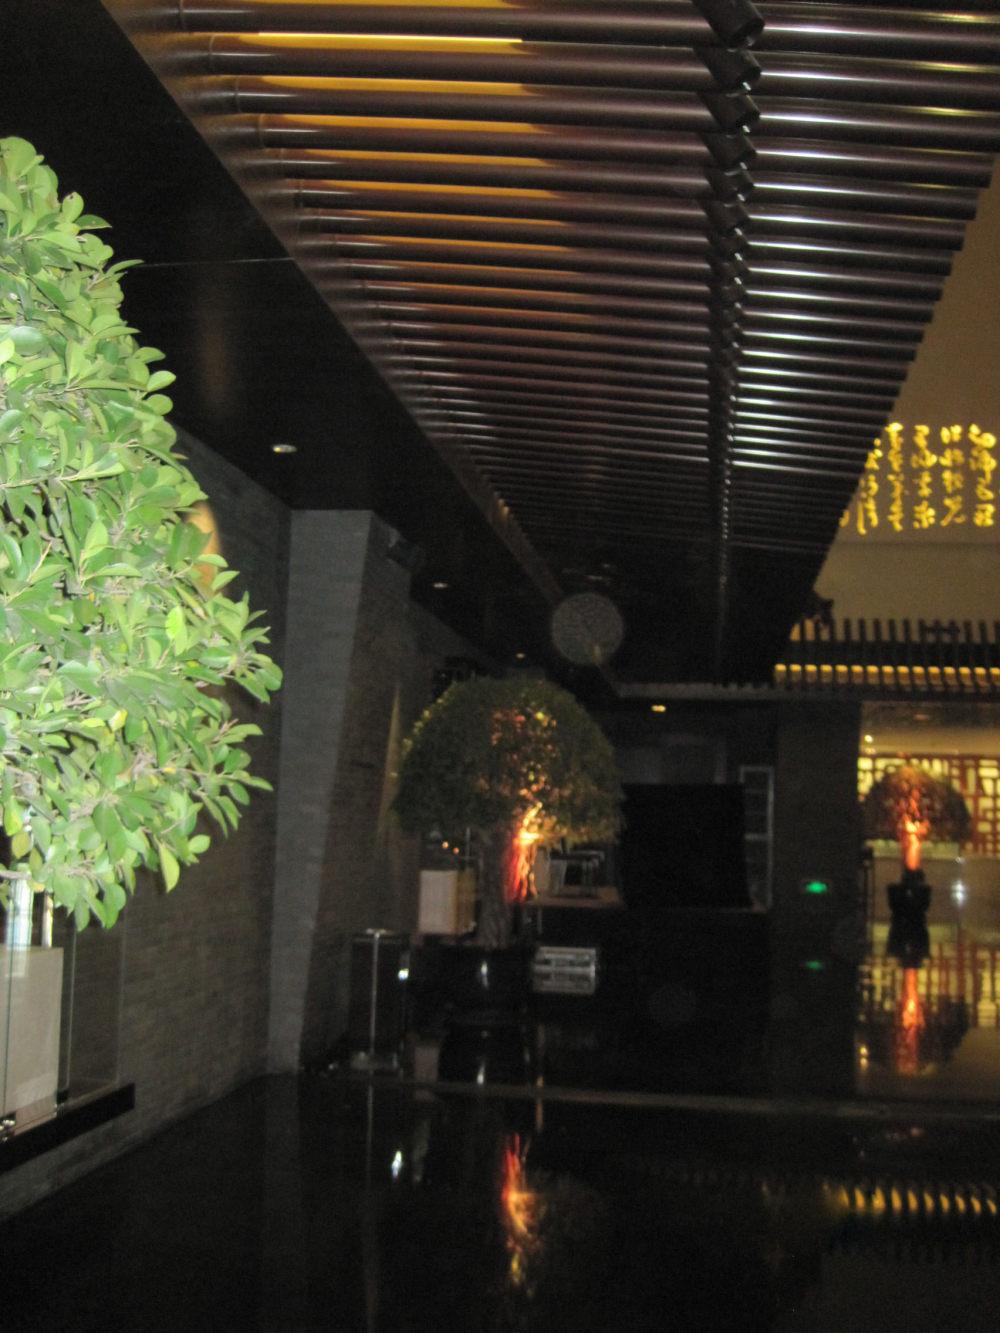 上海浦东卓美亚喜马拉雅酒店7.13第二页更新_IMG_1142.JPG